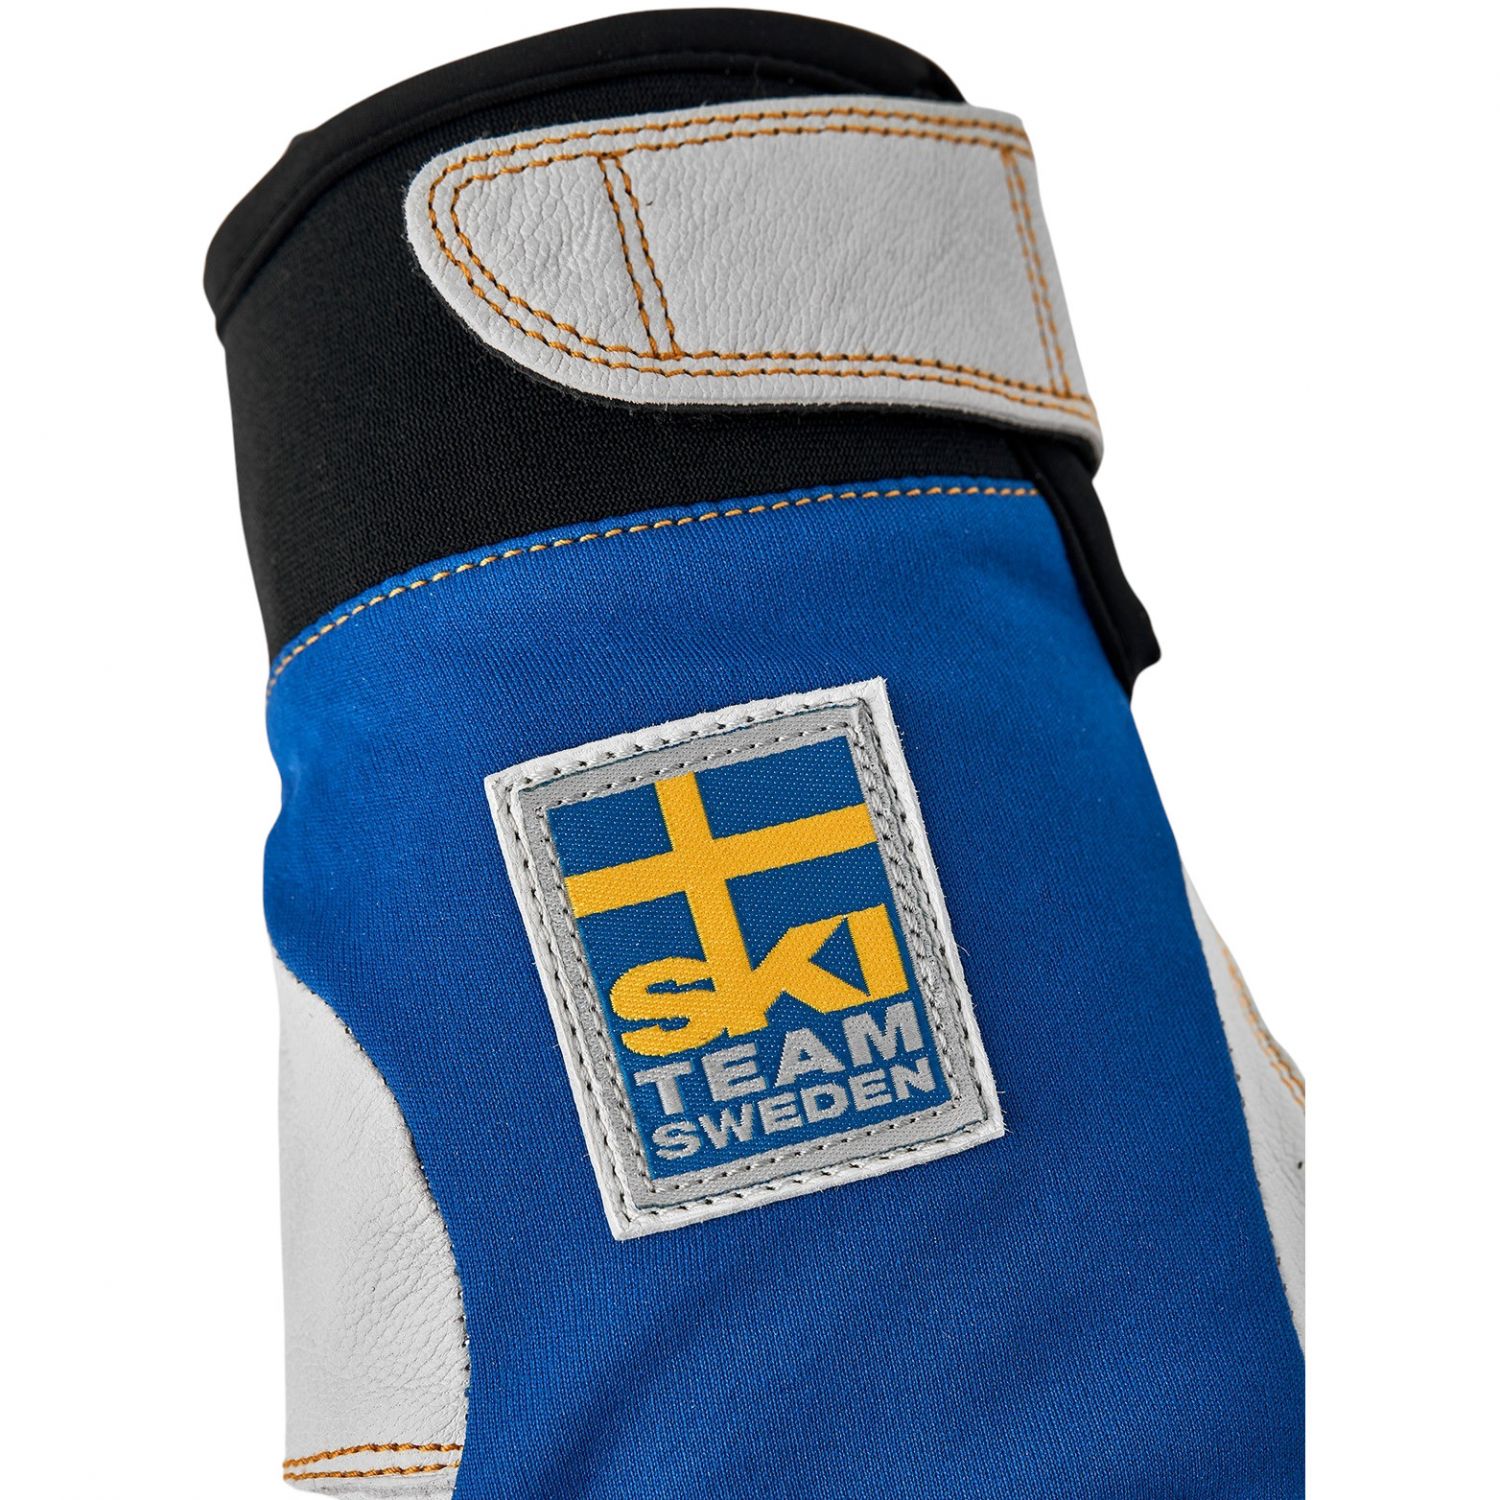 Hestra Ergo Grip Active, gants de ski, bleu/jaune